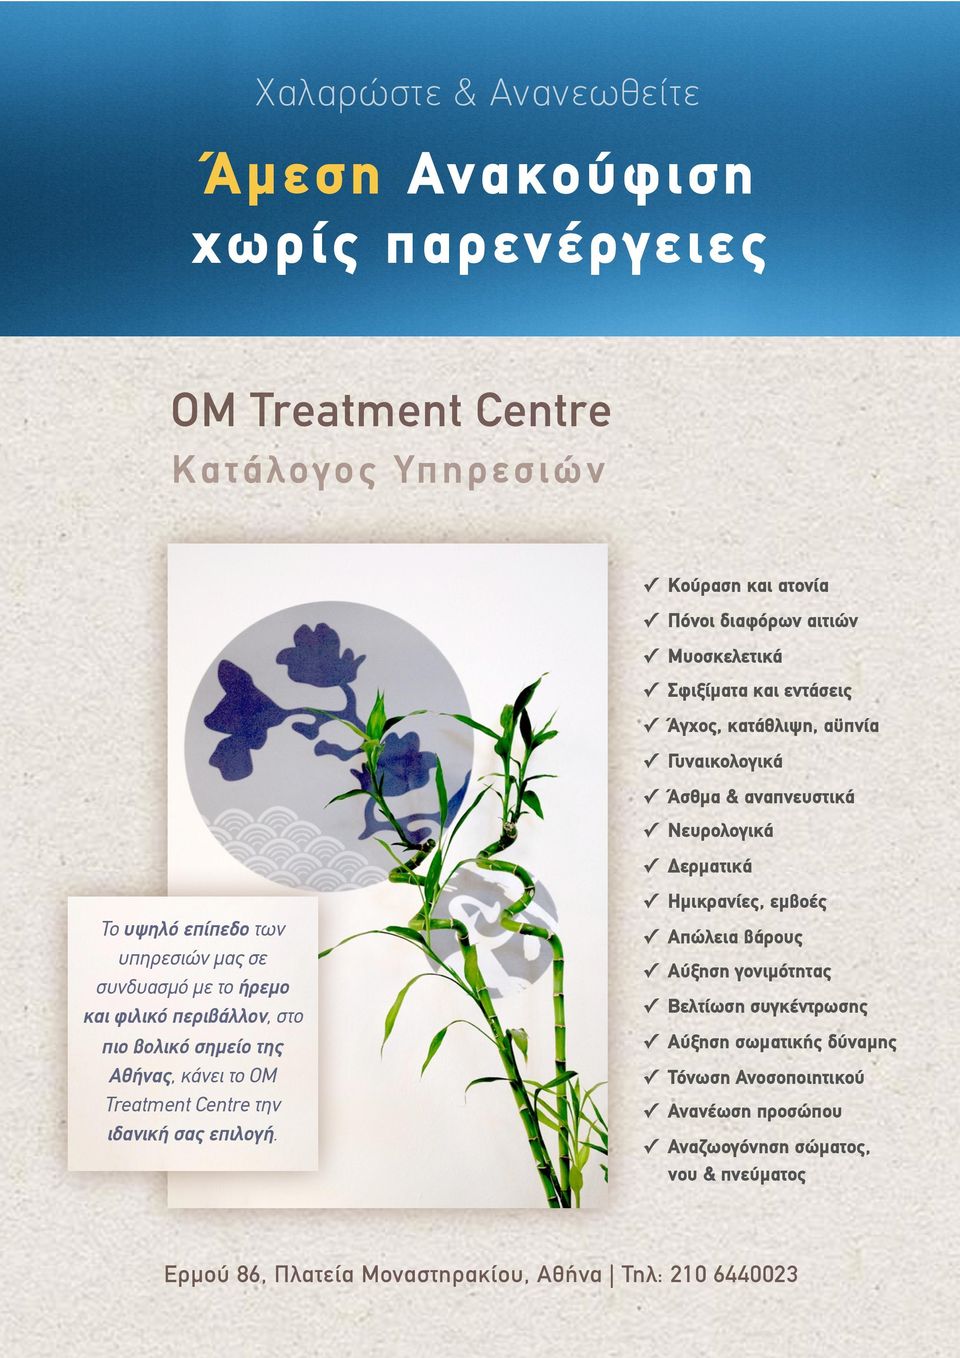 περιβάλλον, στο πιο βολικό σηµείο της Αθήνας, κάνει το OM Treatment Centre την ιδανική σας επιλογή.